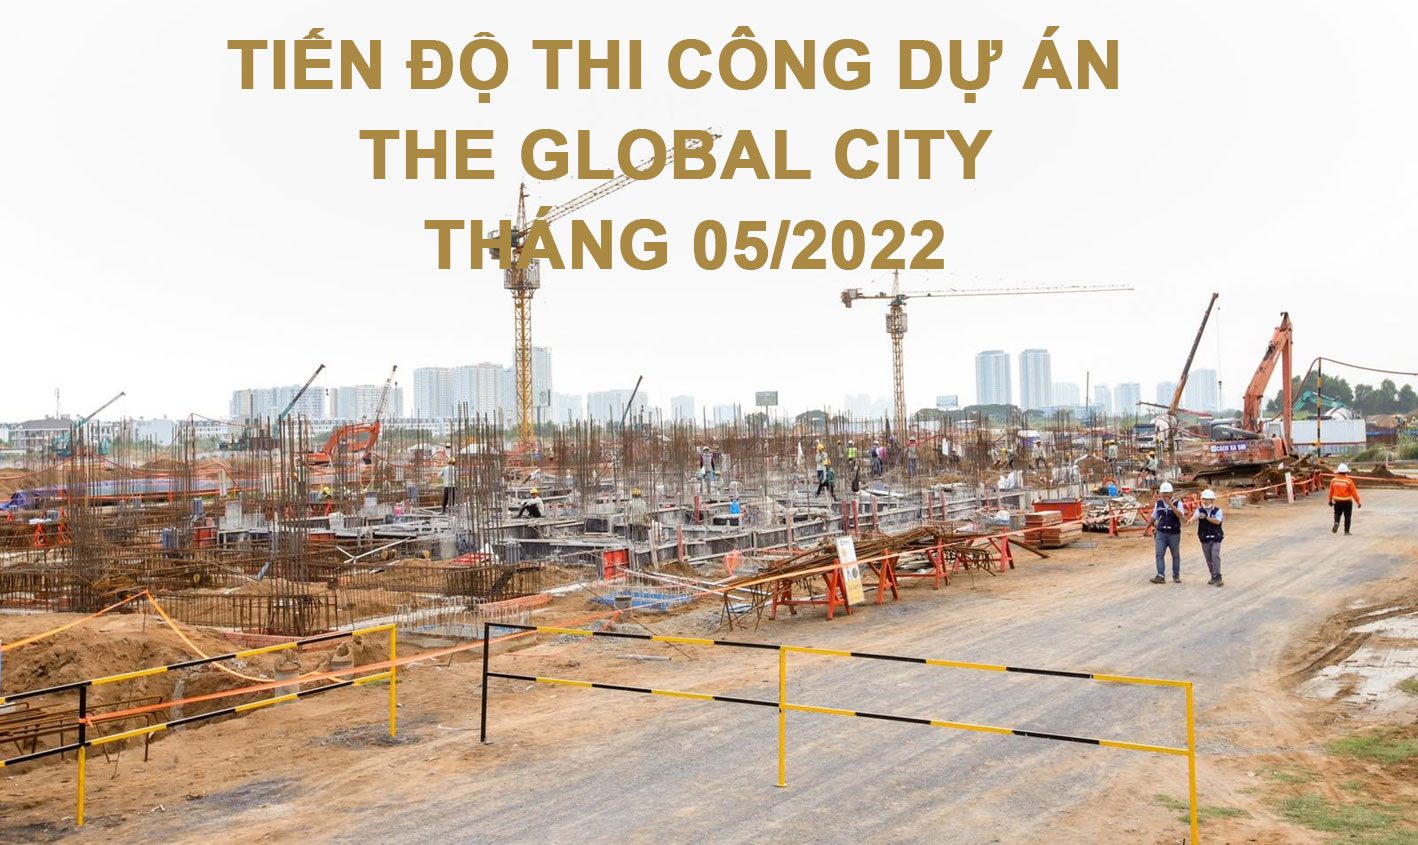 Tiến độ xây dựng dự án The Global City vào tháng 05/2022